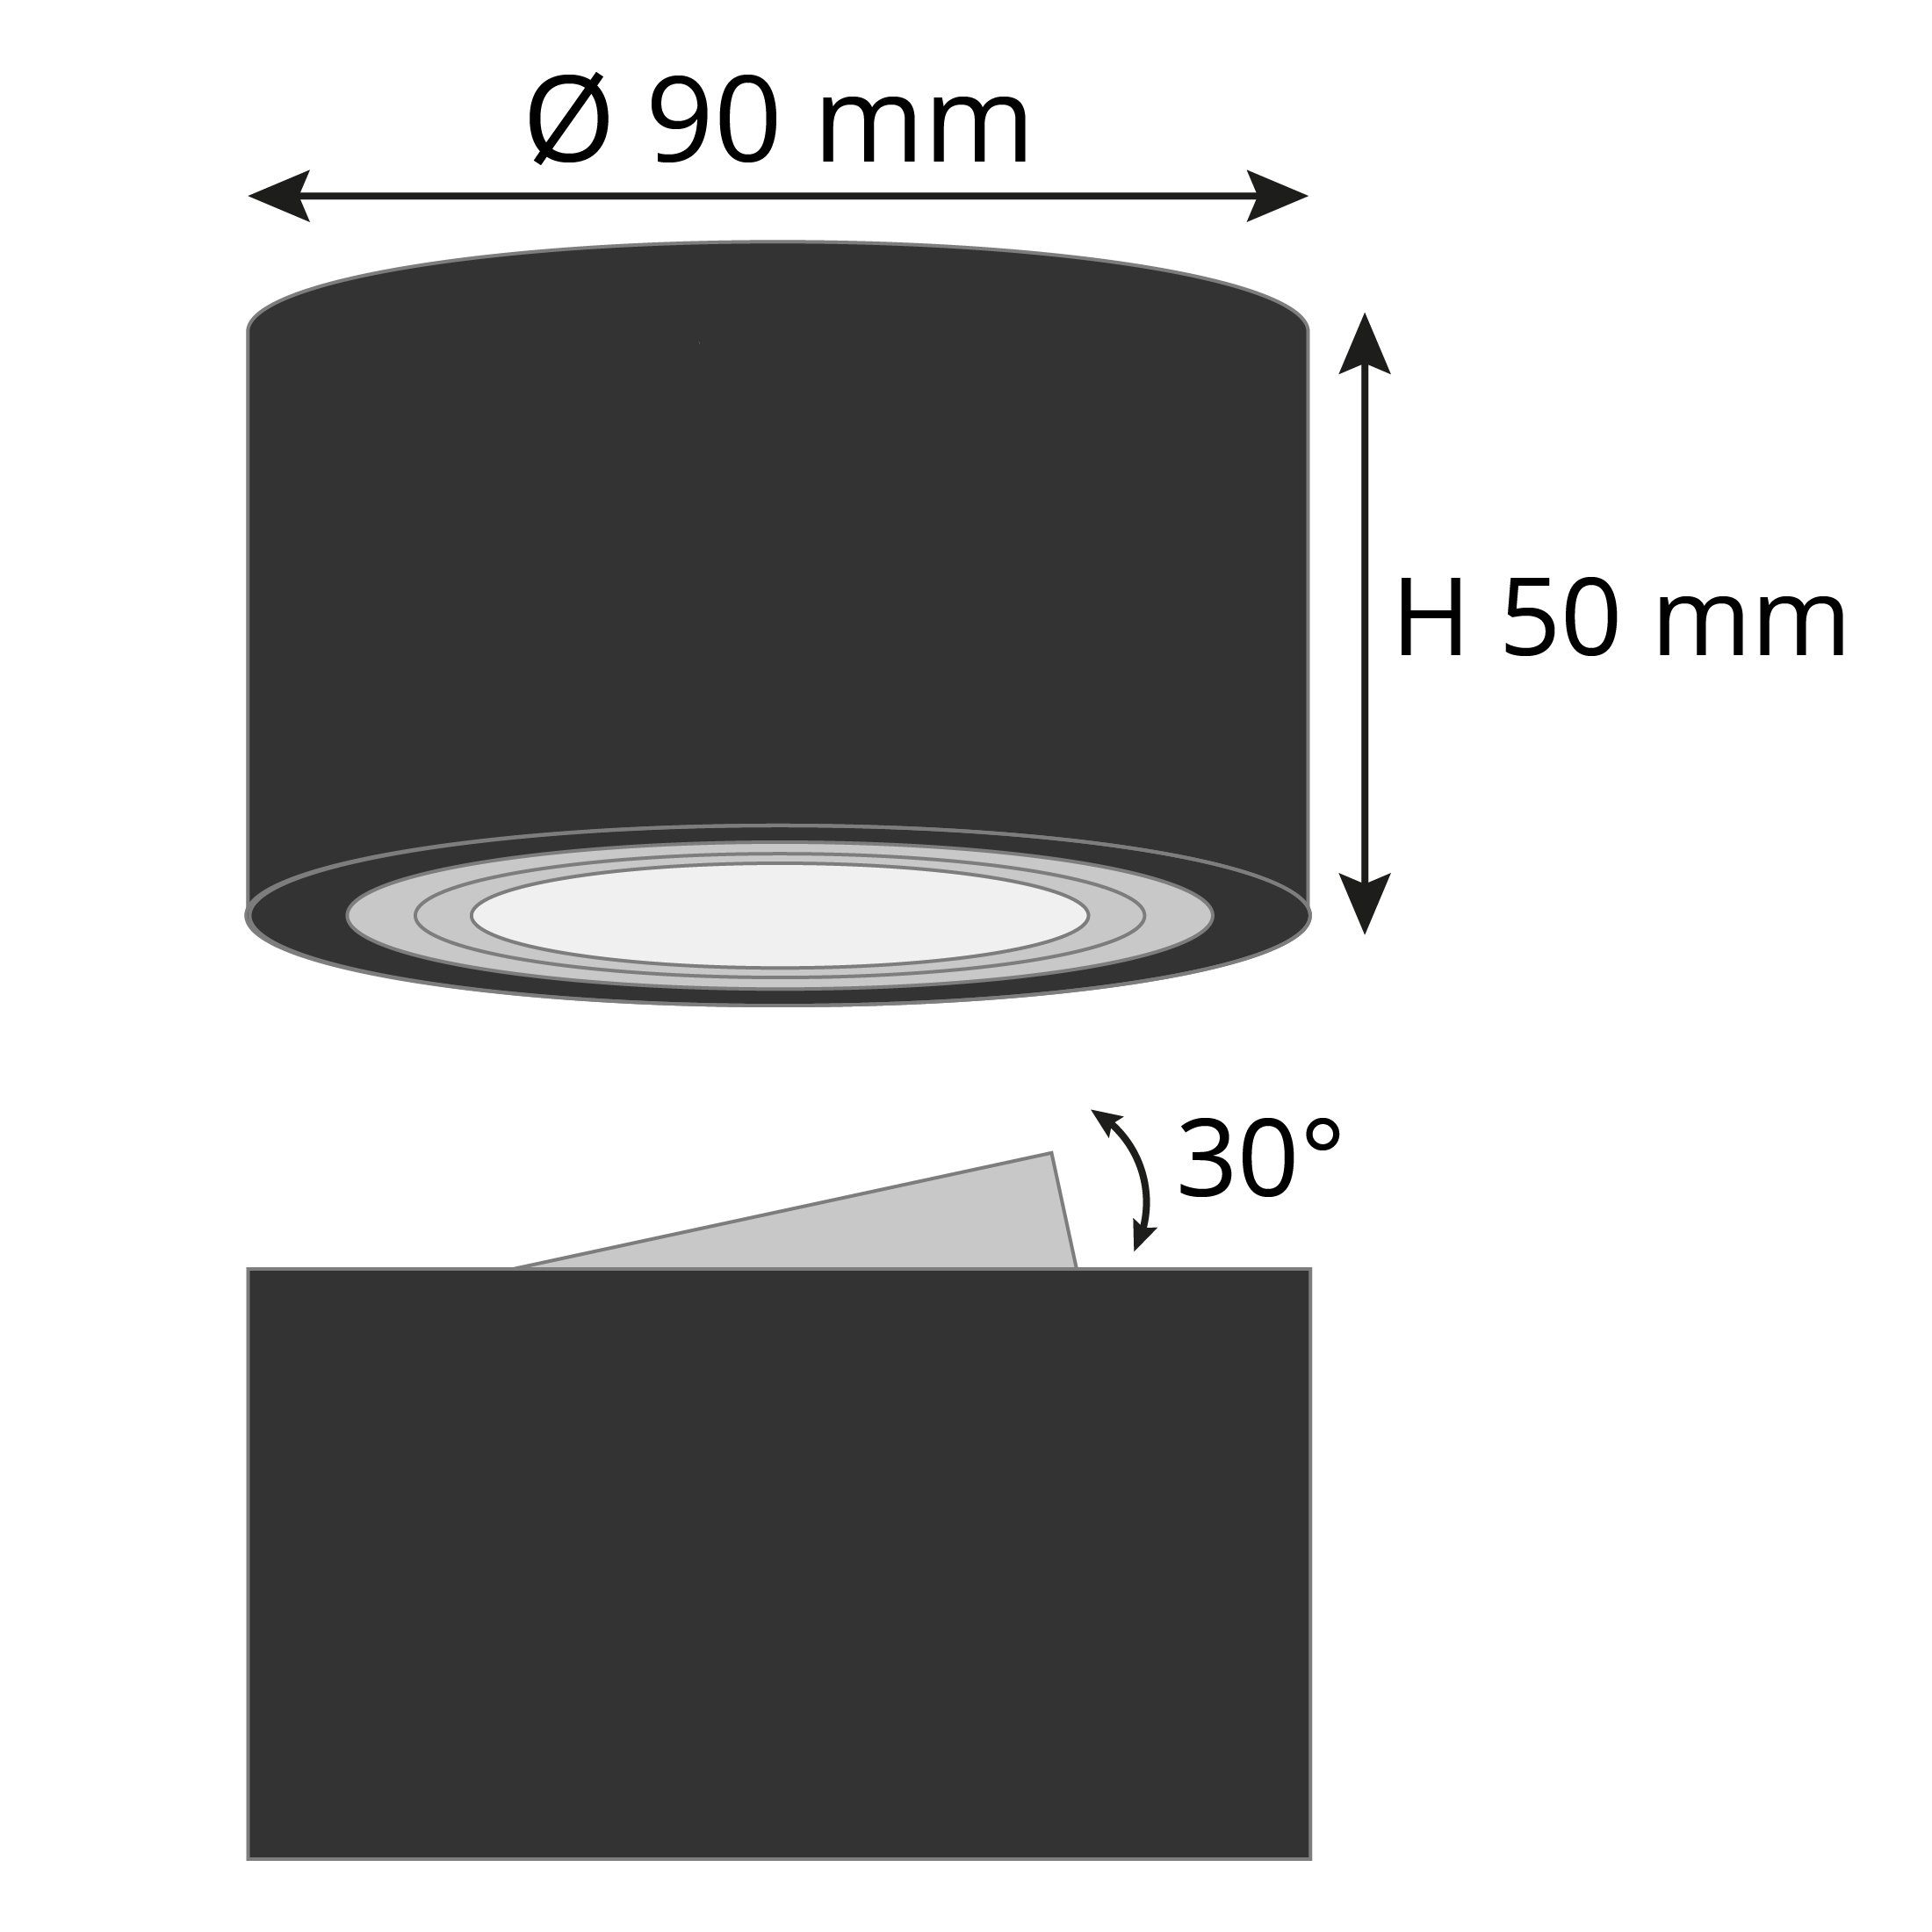 SSC-LUXon Aufbauleuchte Flacher Decken LED schwenkbar mit dimmbarem Modul, Warmweiß schwarz Aufbauspot